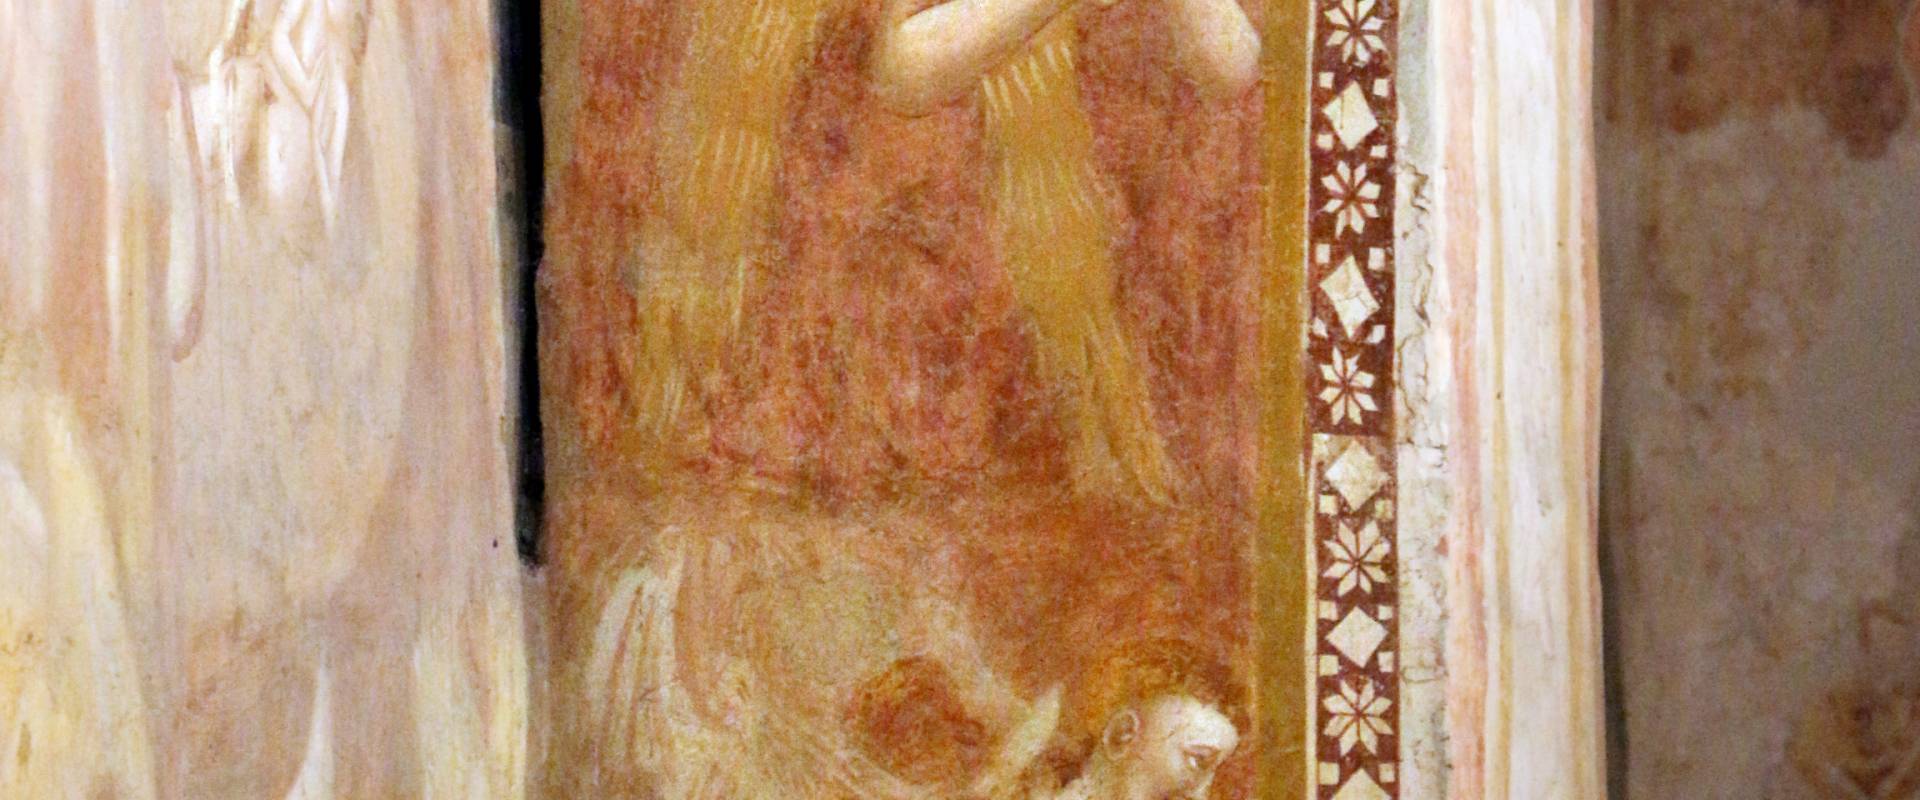 Scuola bolognese, ciclo dell'abbazia di pomposa, 1350 ca., giudizio universale, inferno 05 foto di Sailko